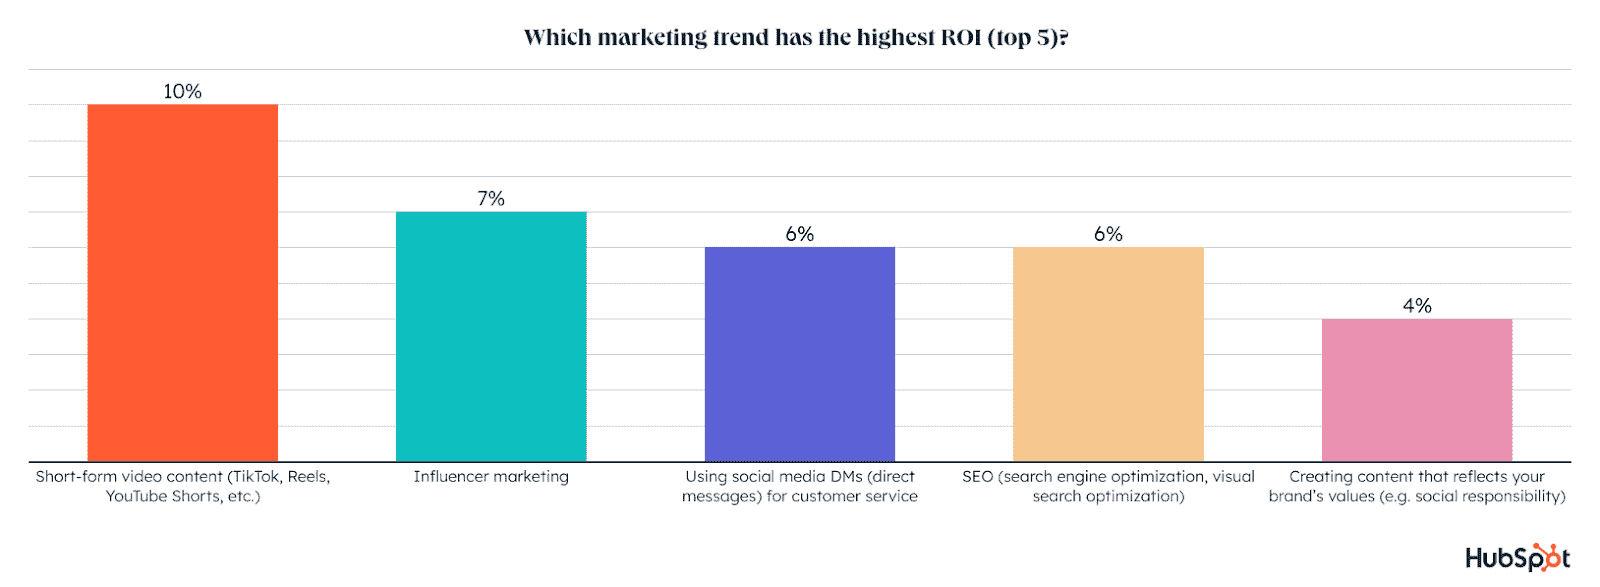 Трендовые маркетинговые форматы, которые приносят наибольшие ROI вебам